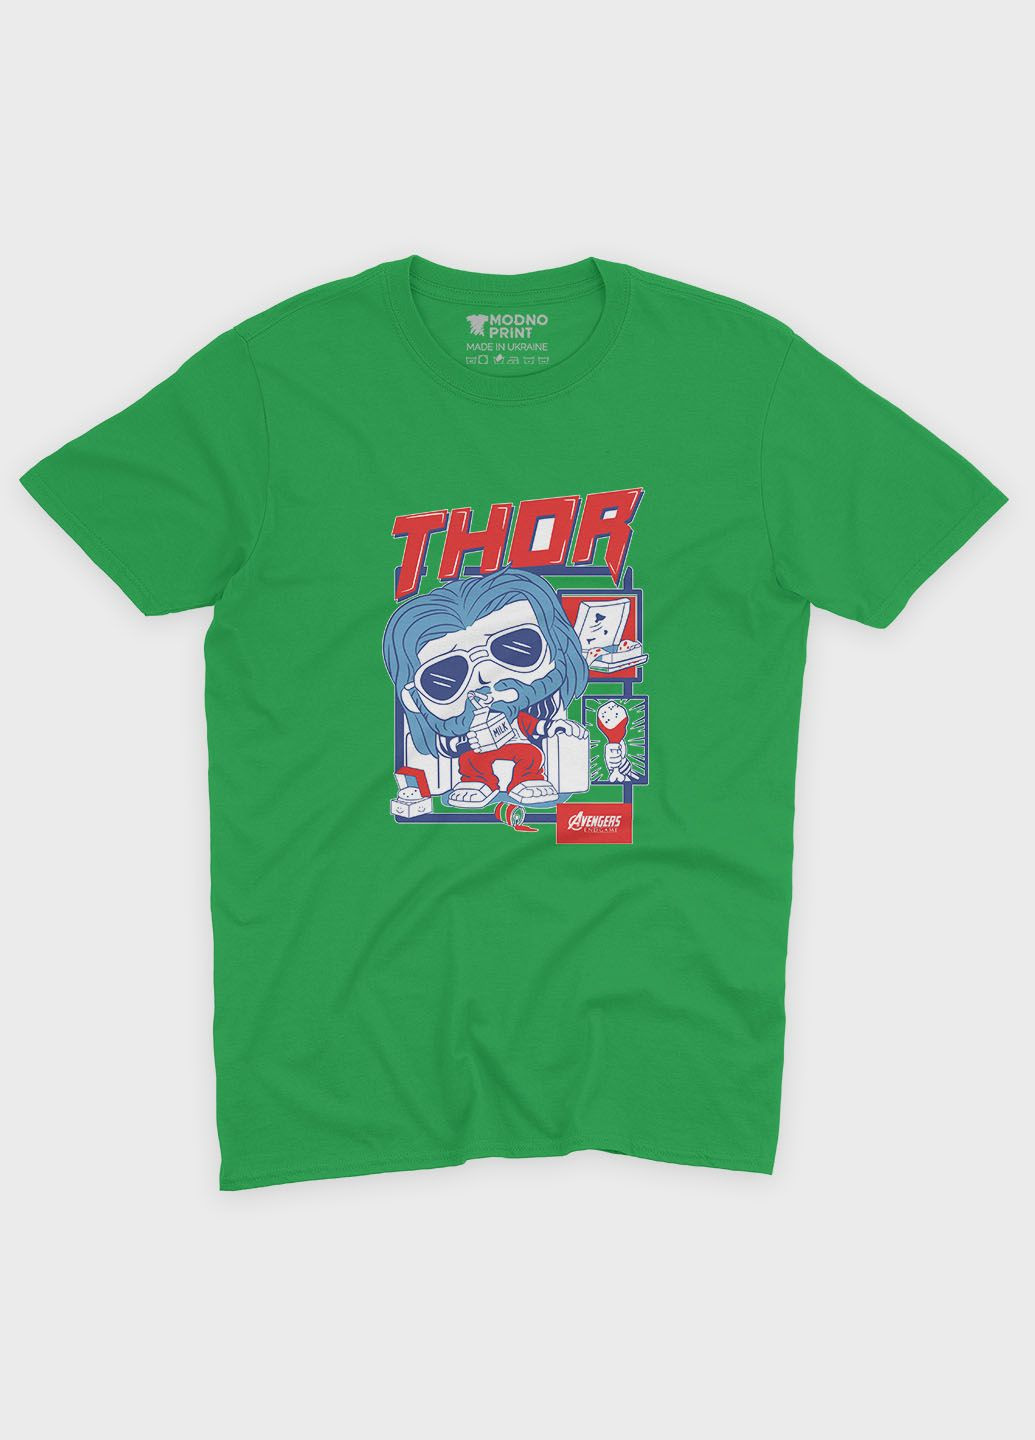 Зелена демісезонна футболка для дівчинки з принтом супергероя - тор (ts001-1-keg-006-024-002-g) Modno